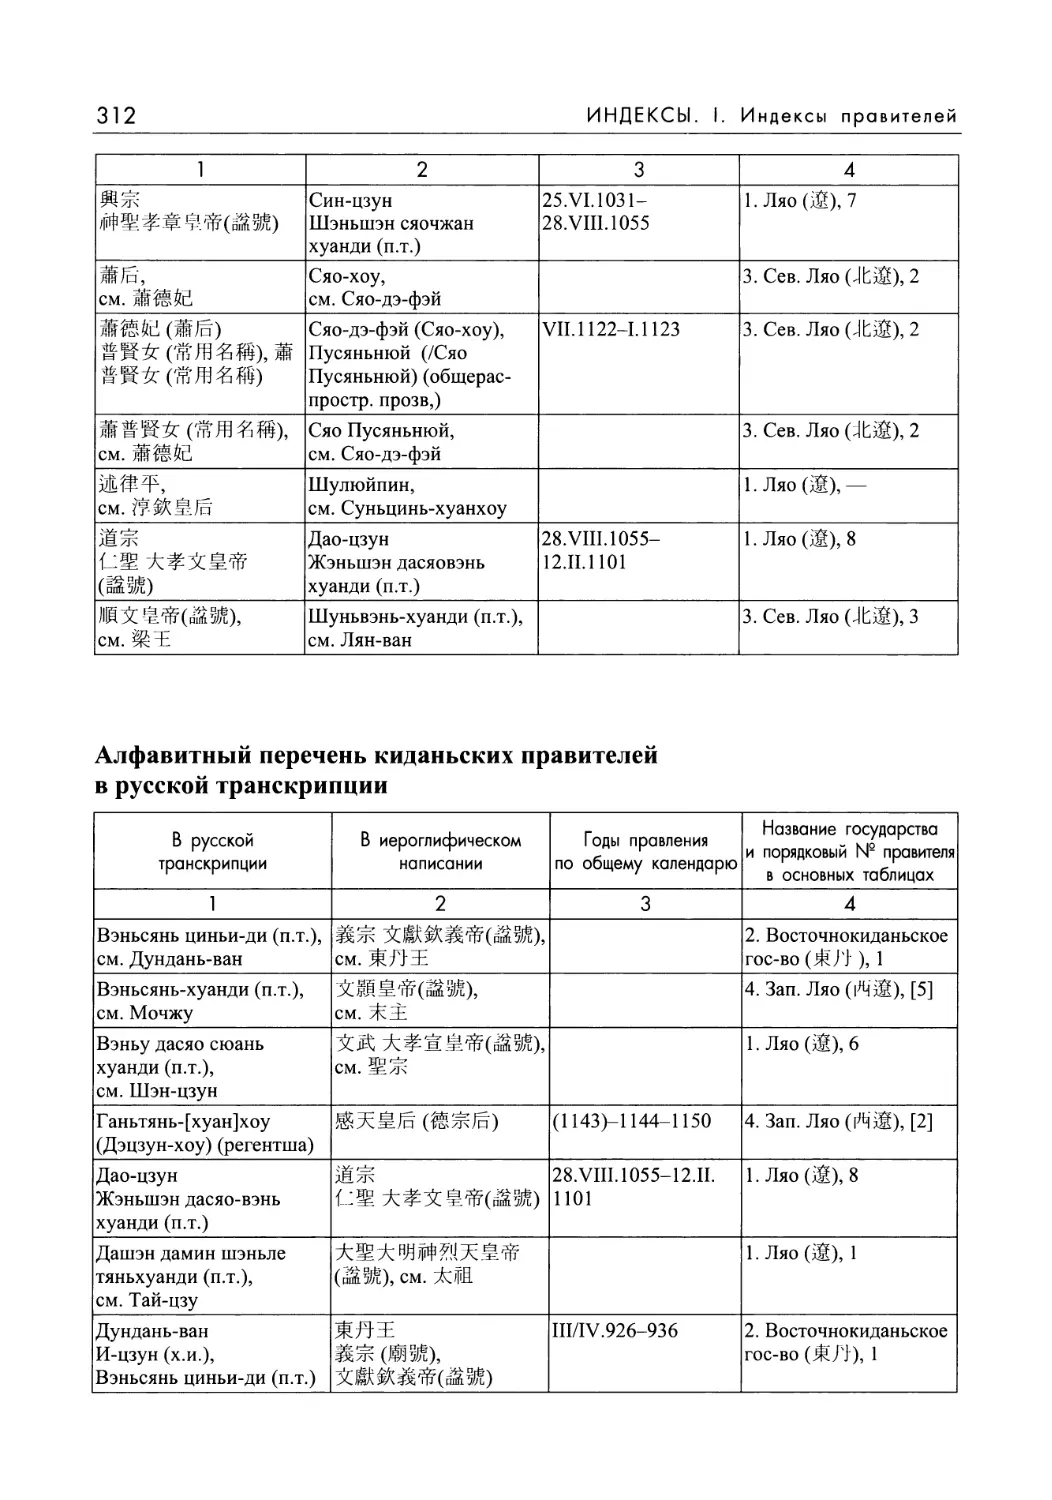 2. Алфавитный перечень киданьских правителей в русской транскрипции